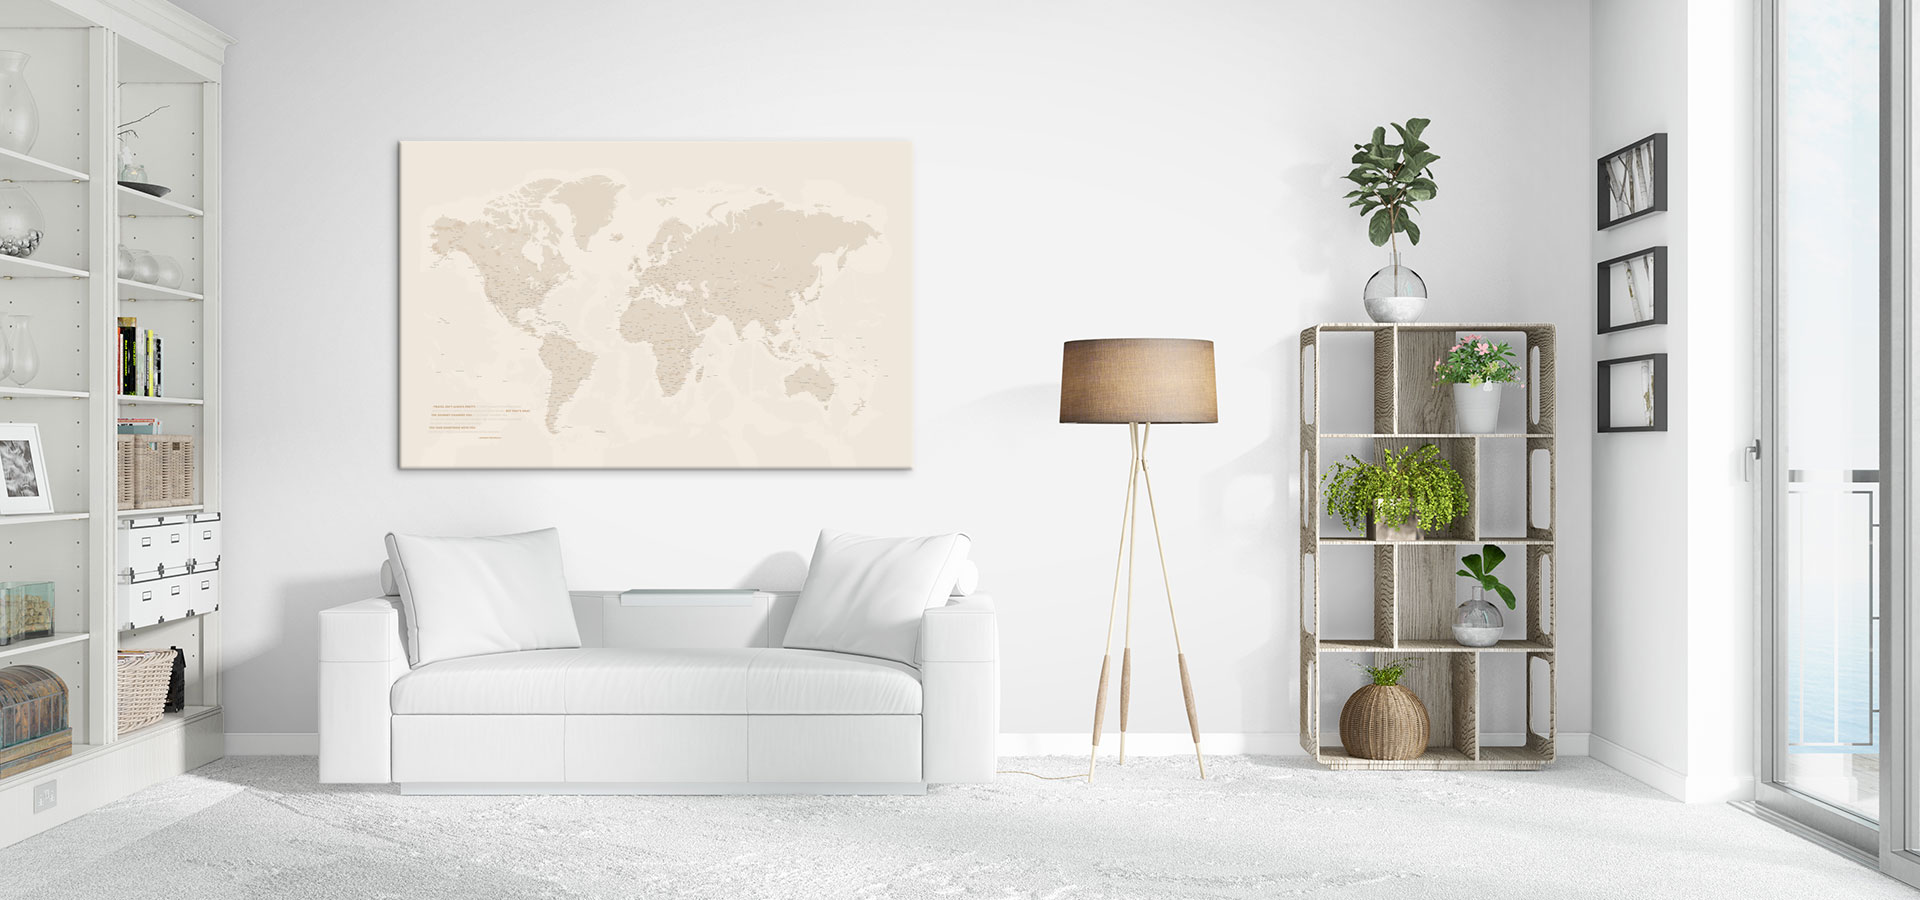 Weltkarte als Pinnwand ist eine tolle Dekoration an jeder Wand